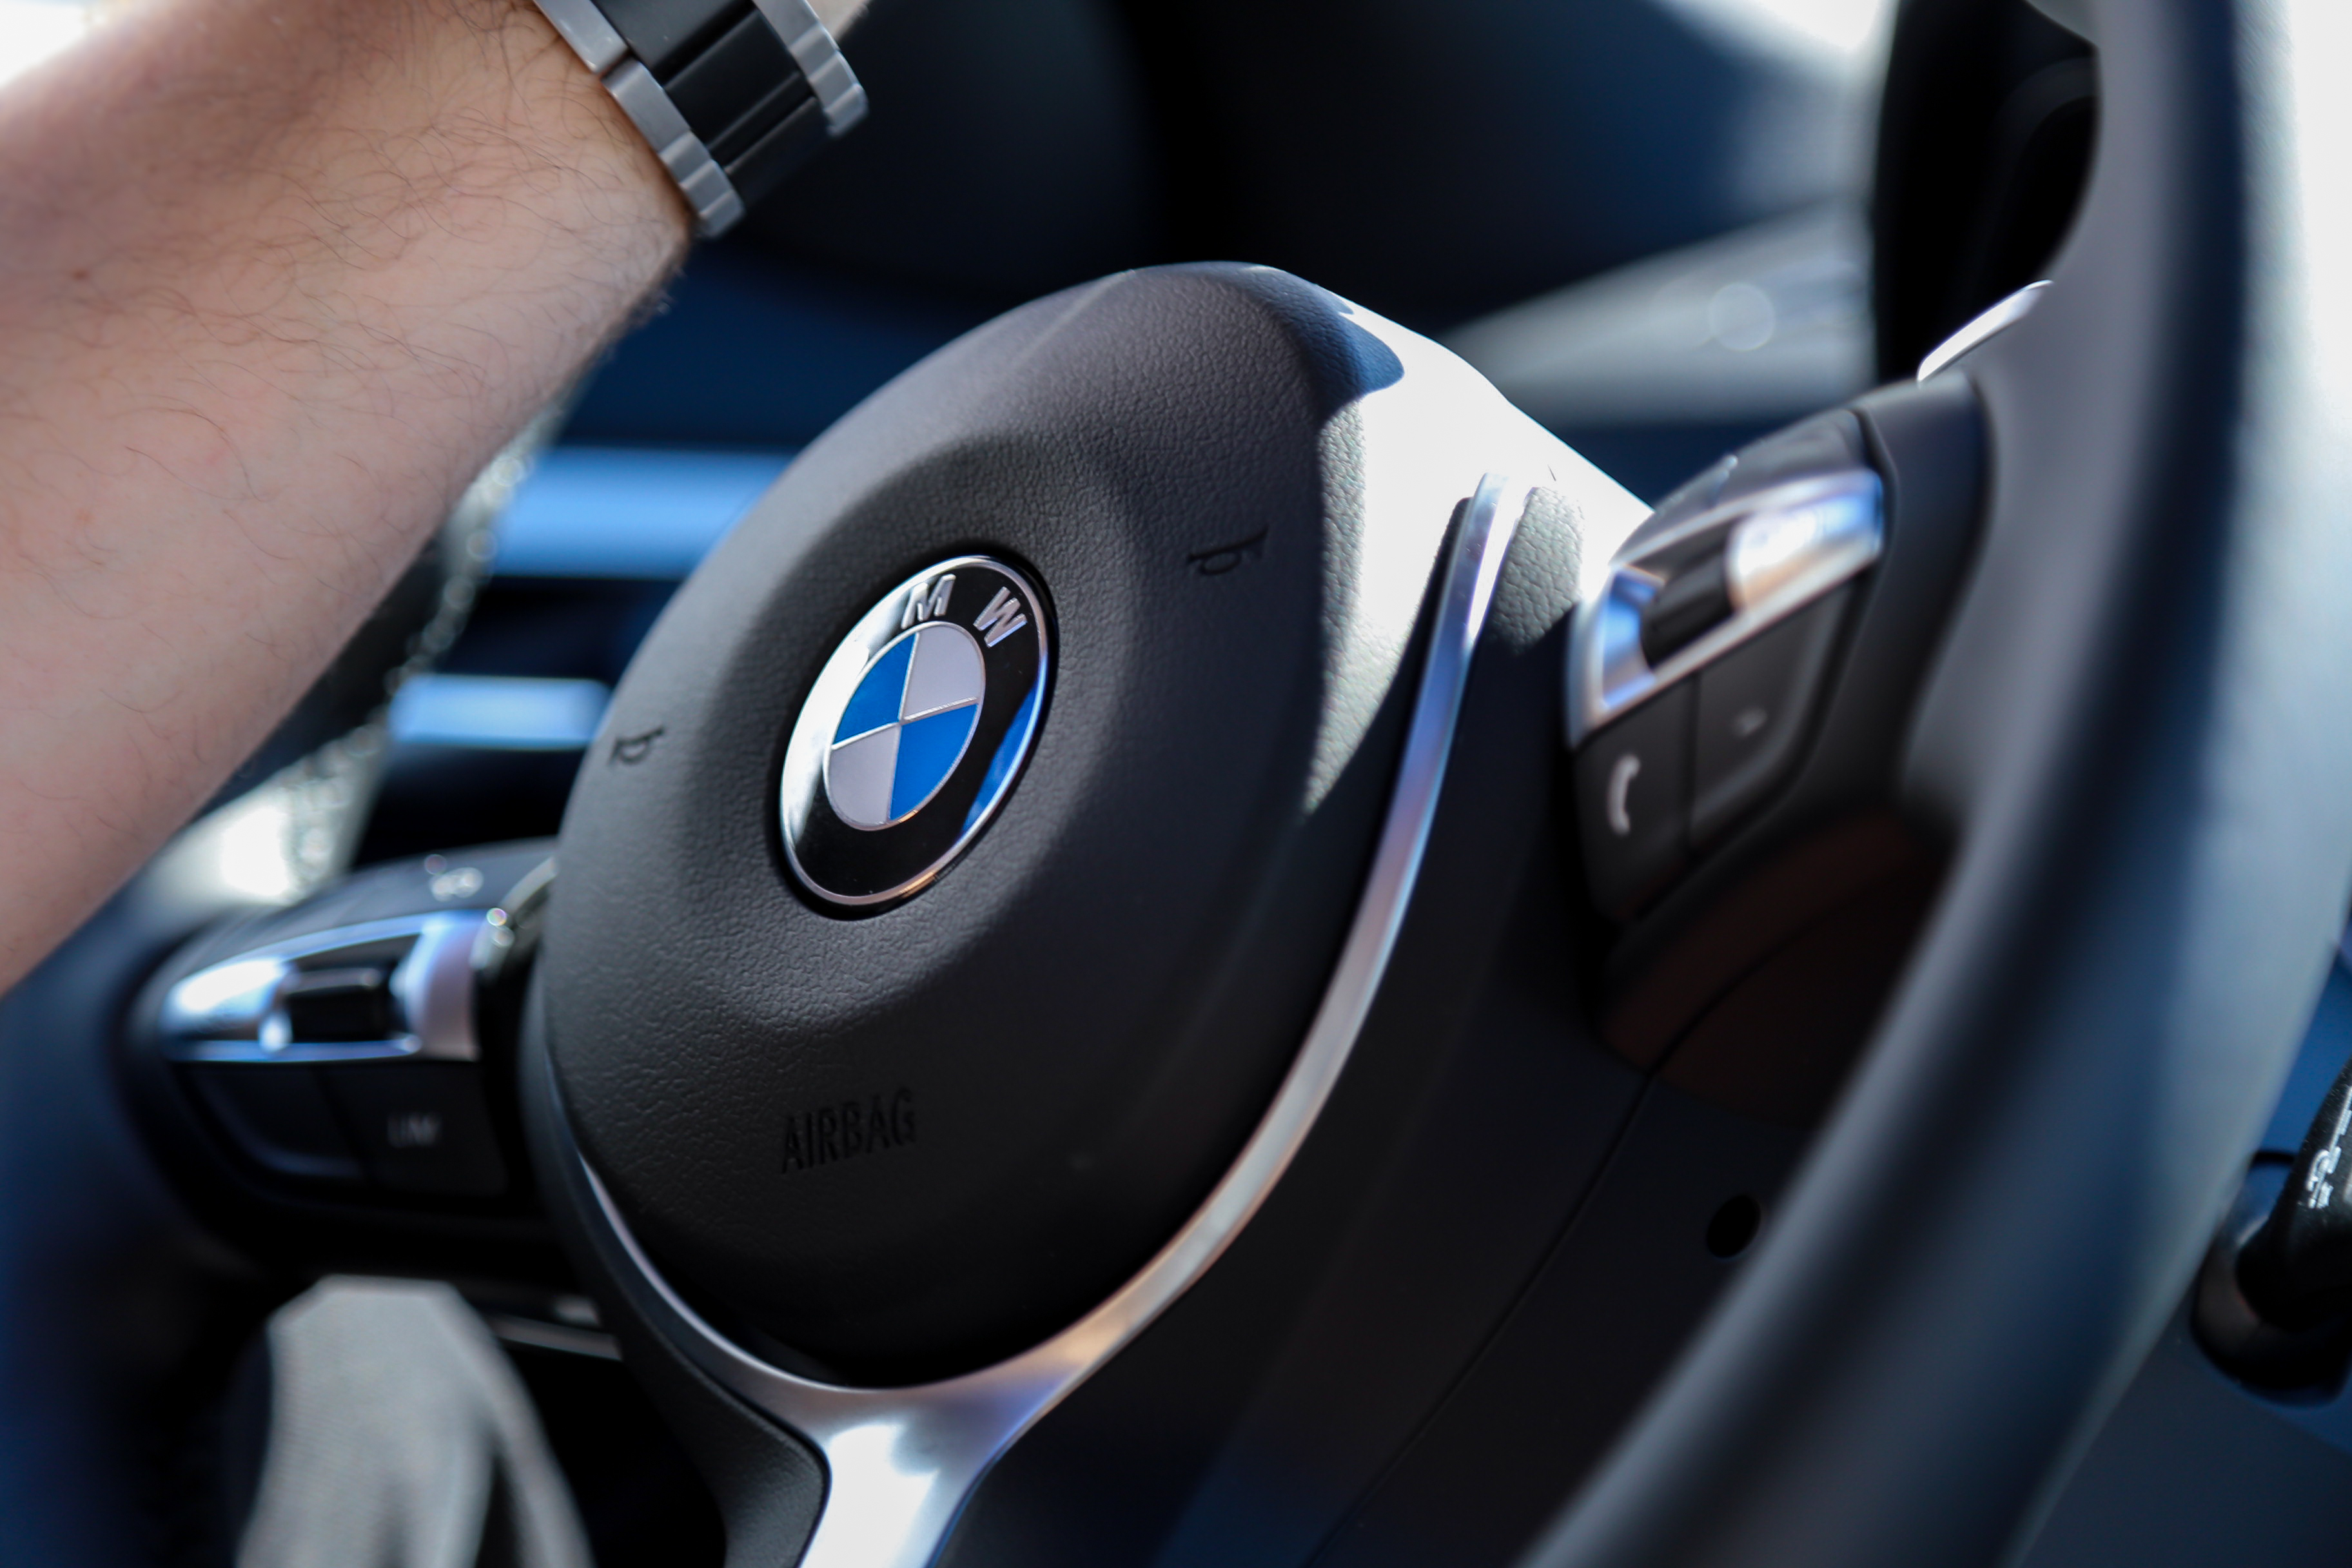 Der BMW X1: mein persönlicher Testbericht FreudeAmFahren SheerDrivingPleasure München BMWAG Ötztal SUV SAV Einser KompaktSUV X-Drive Allrad Offroad Jennifer PepperAndGold Testride Testbericht 